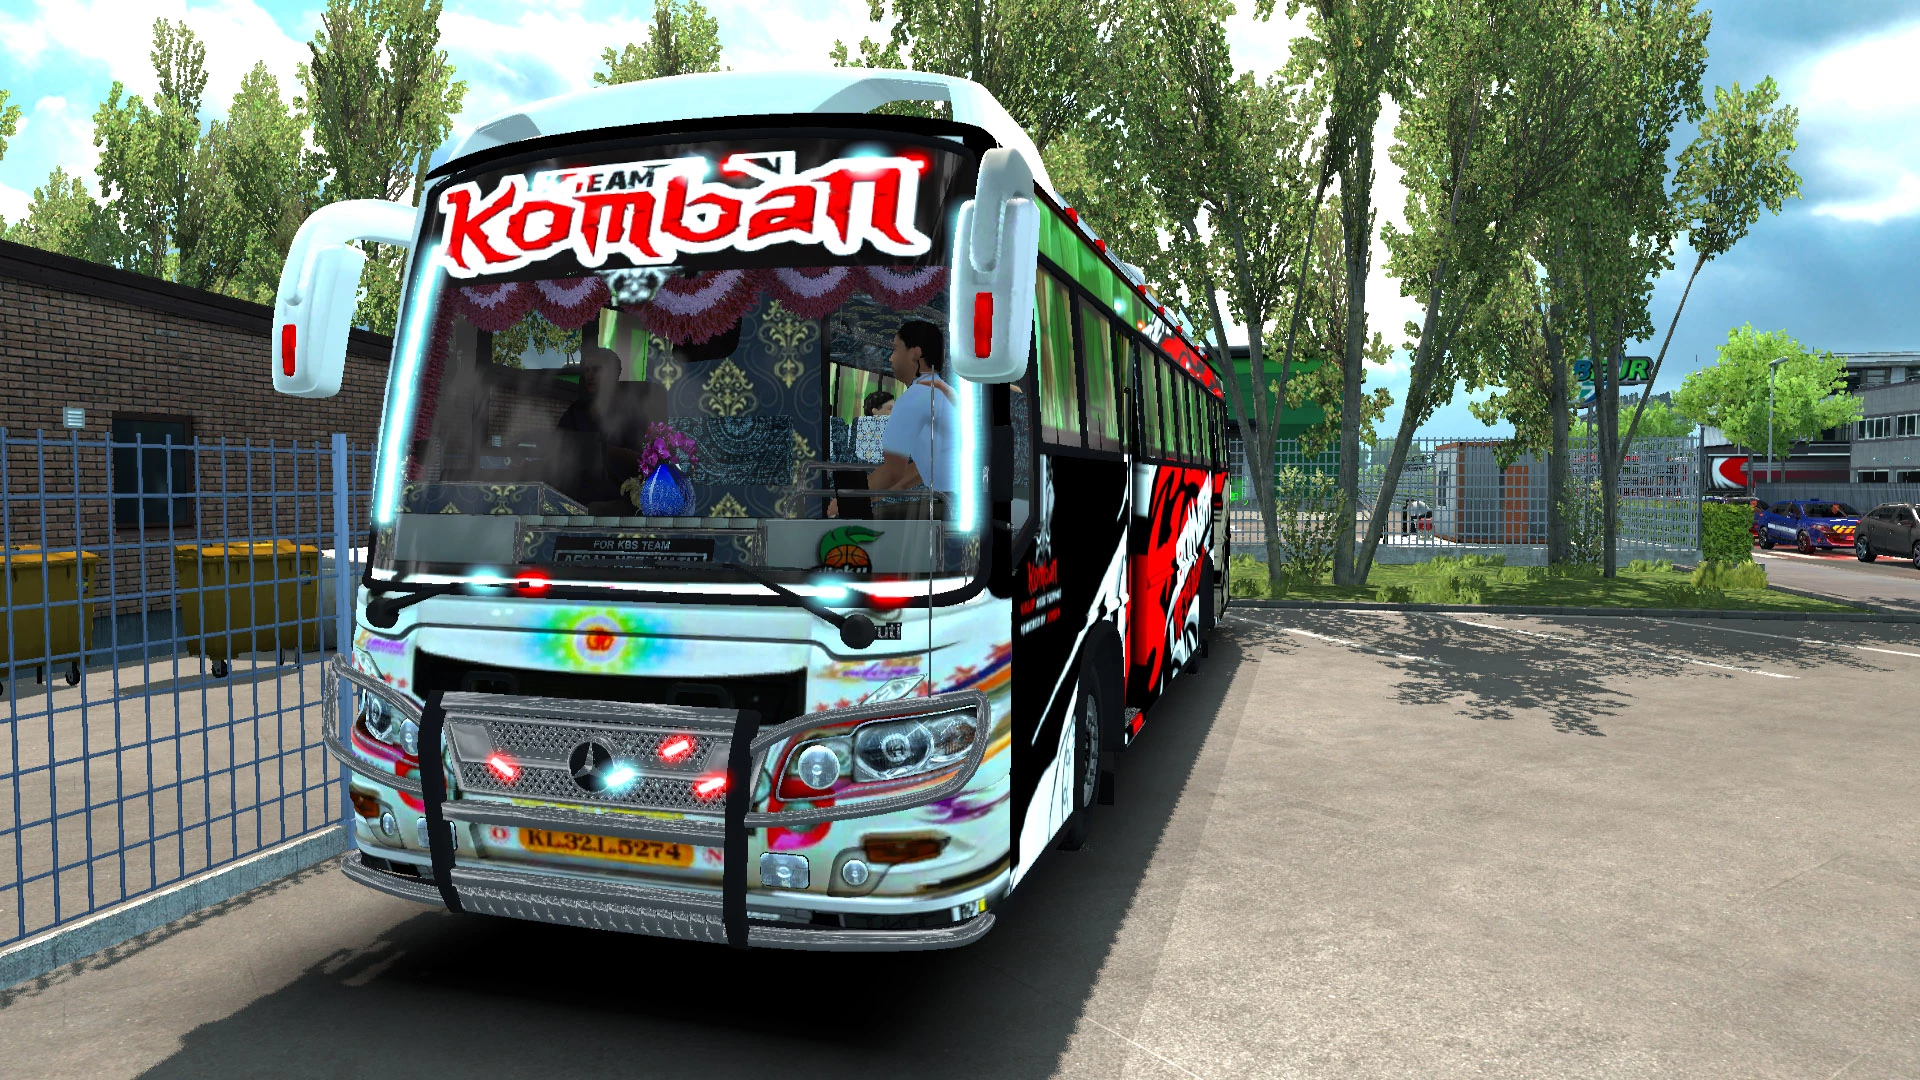 Komban Bus Skin Download Komban Bombay Skin For Skyliner Mod Bussid Youtube Komban Komban Tourist Bus Dawood And Komban Yodhavu Skins Ets 2 Busmod Fast Me